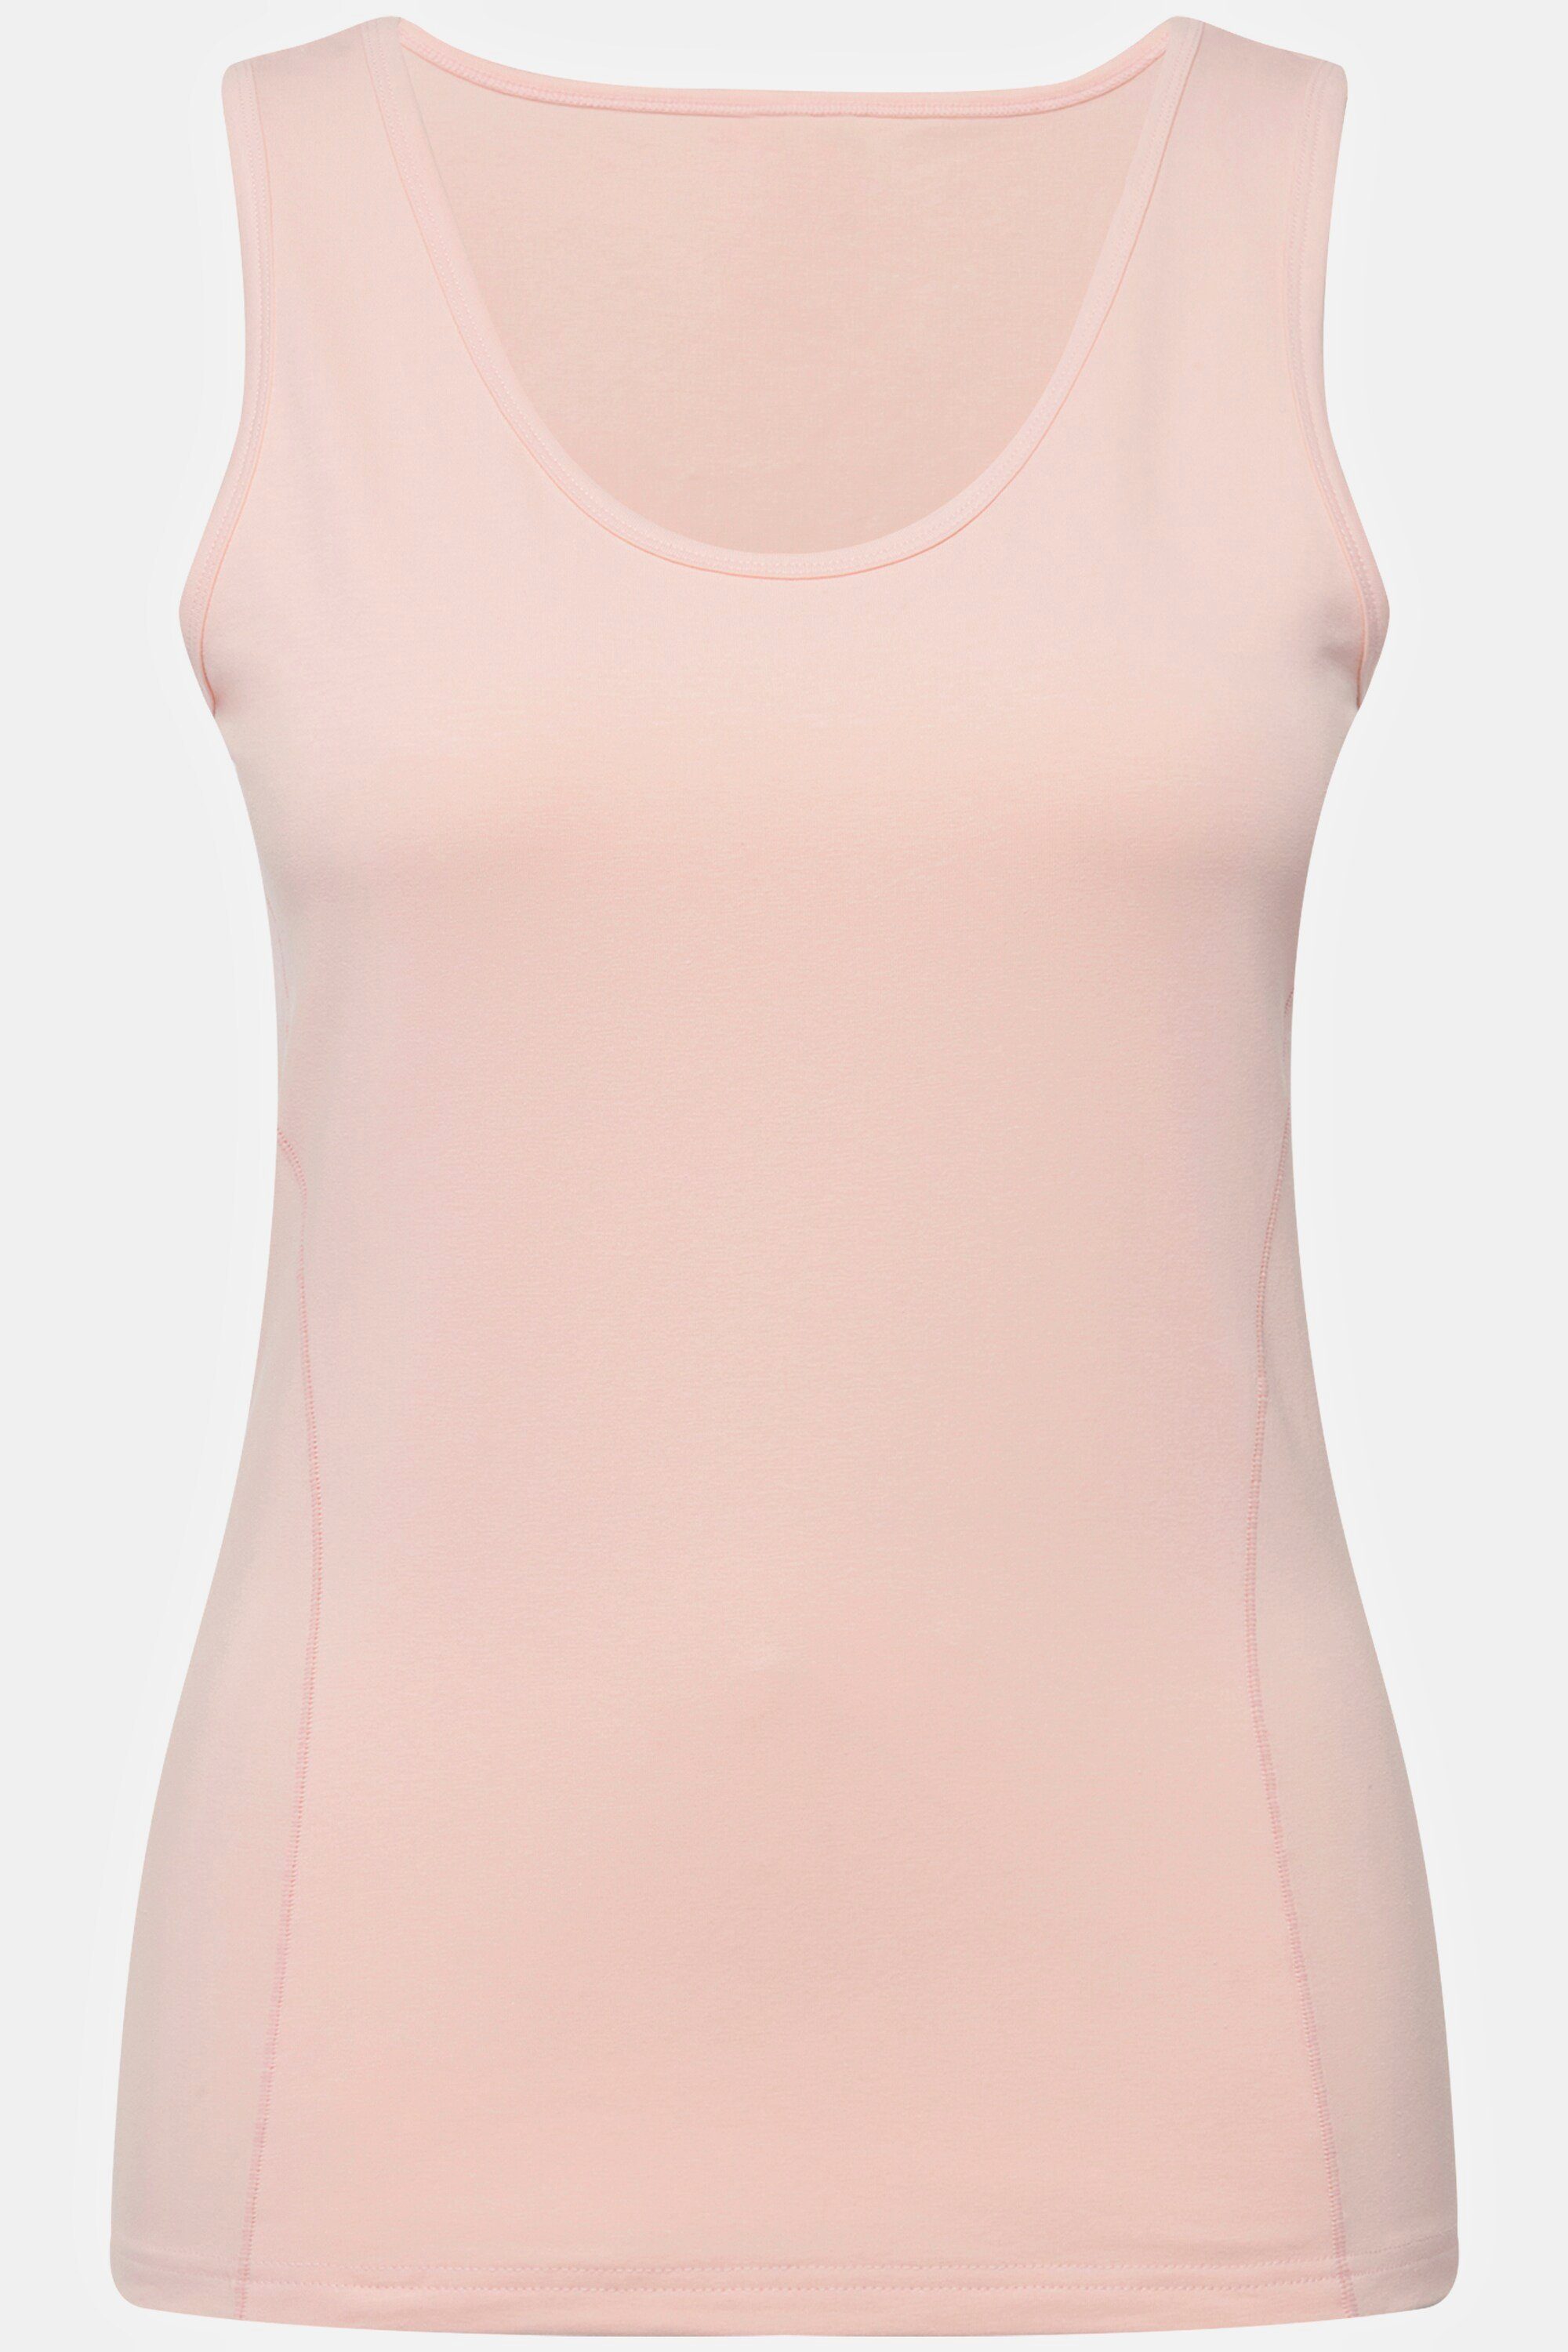 Ulla Popken Unterhemd Bodyforming-Unterhemd Träger rosa breite Rundhals